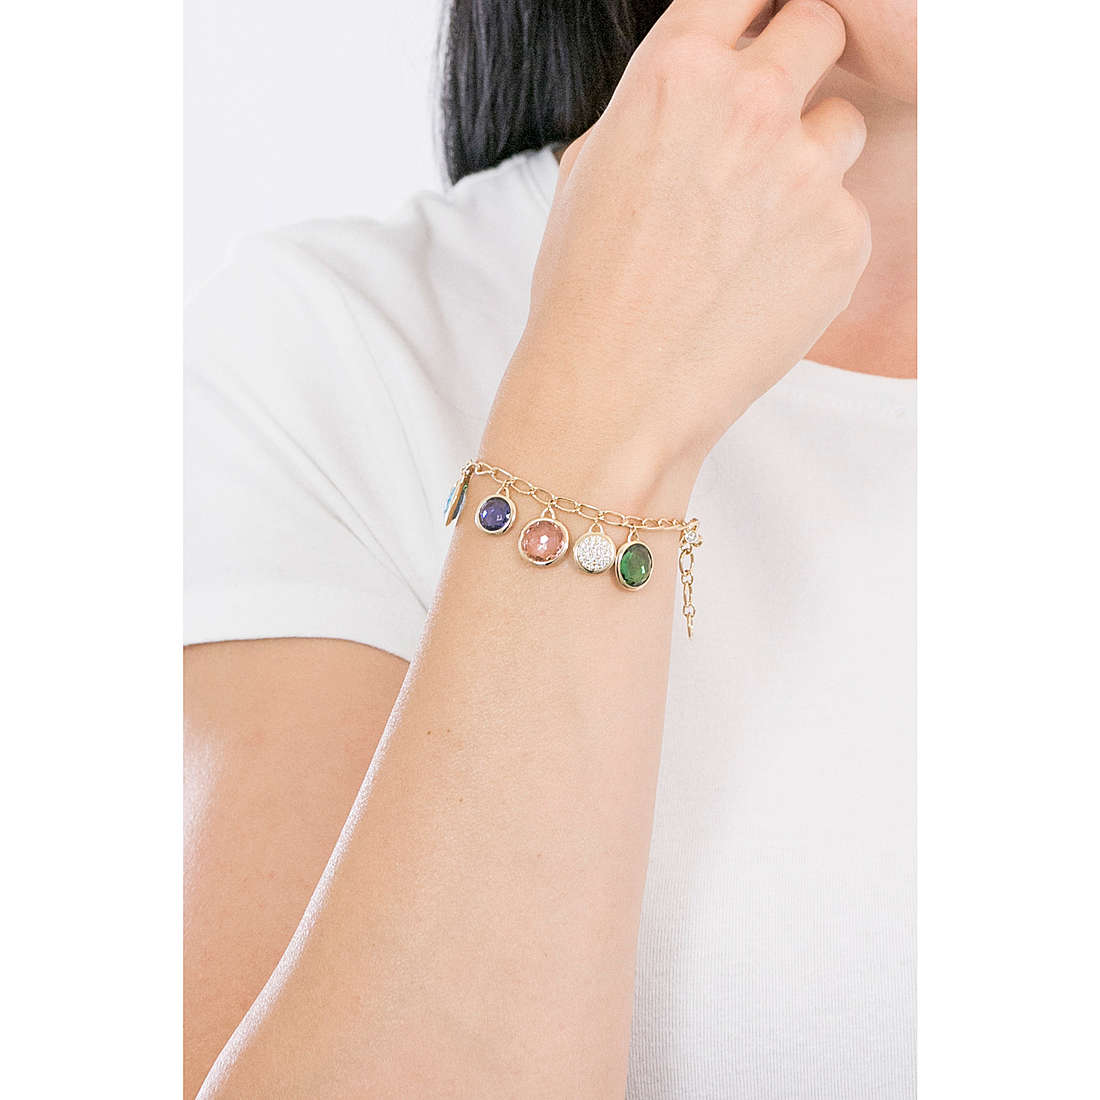 bracelet woman jewel Swarovski Tahlia 5560943